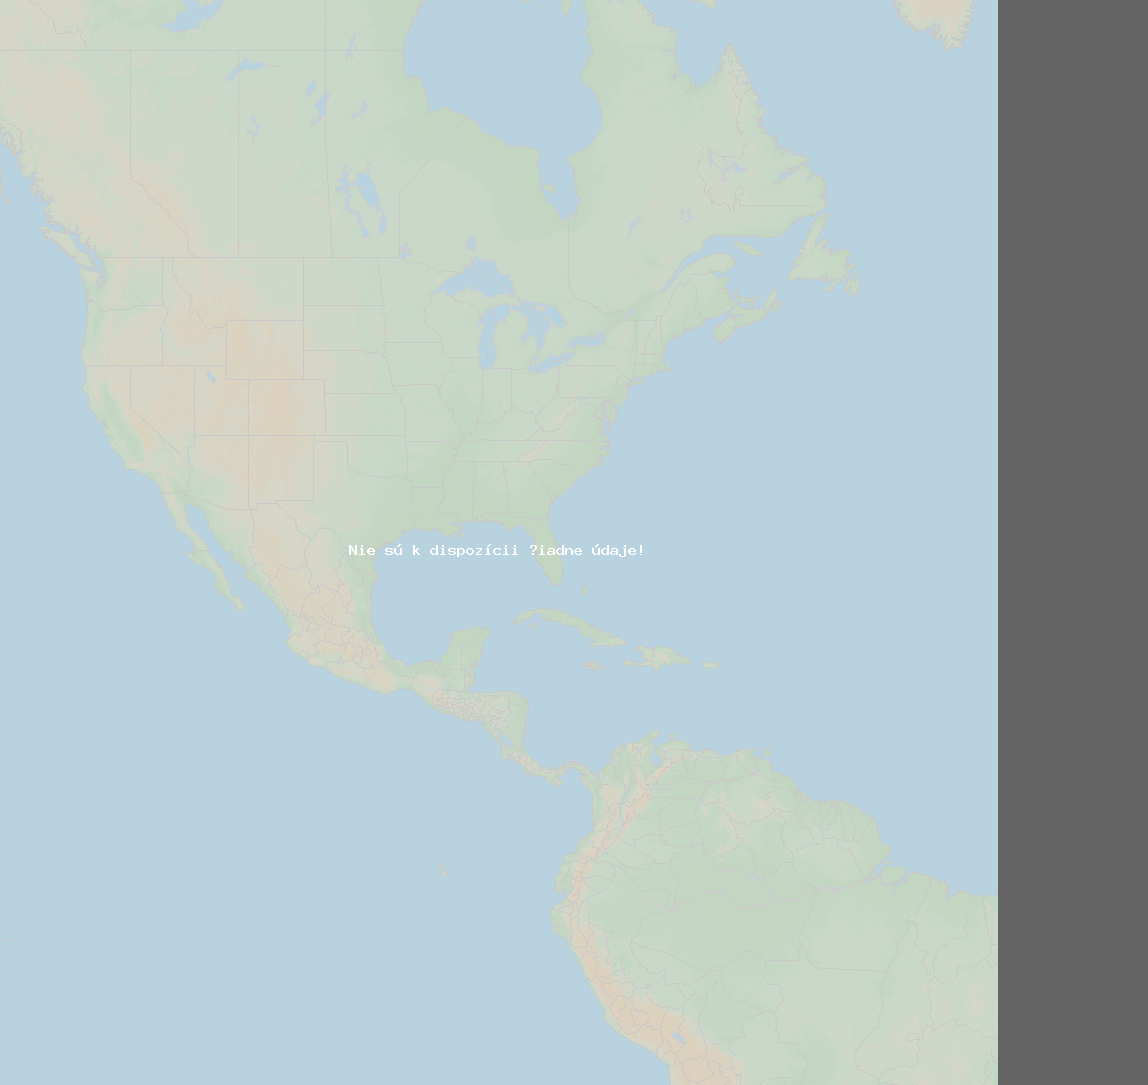 Pomer bleskov (Stanica Savannah) North America 2024 